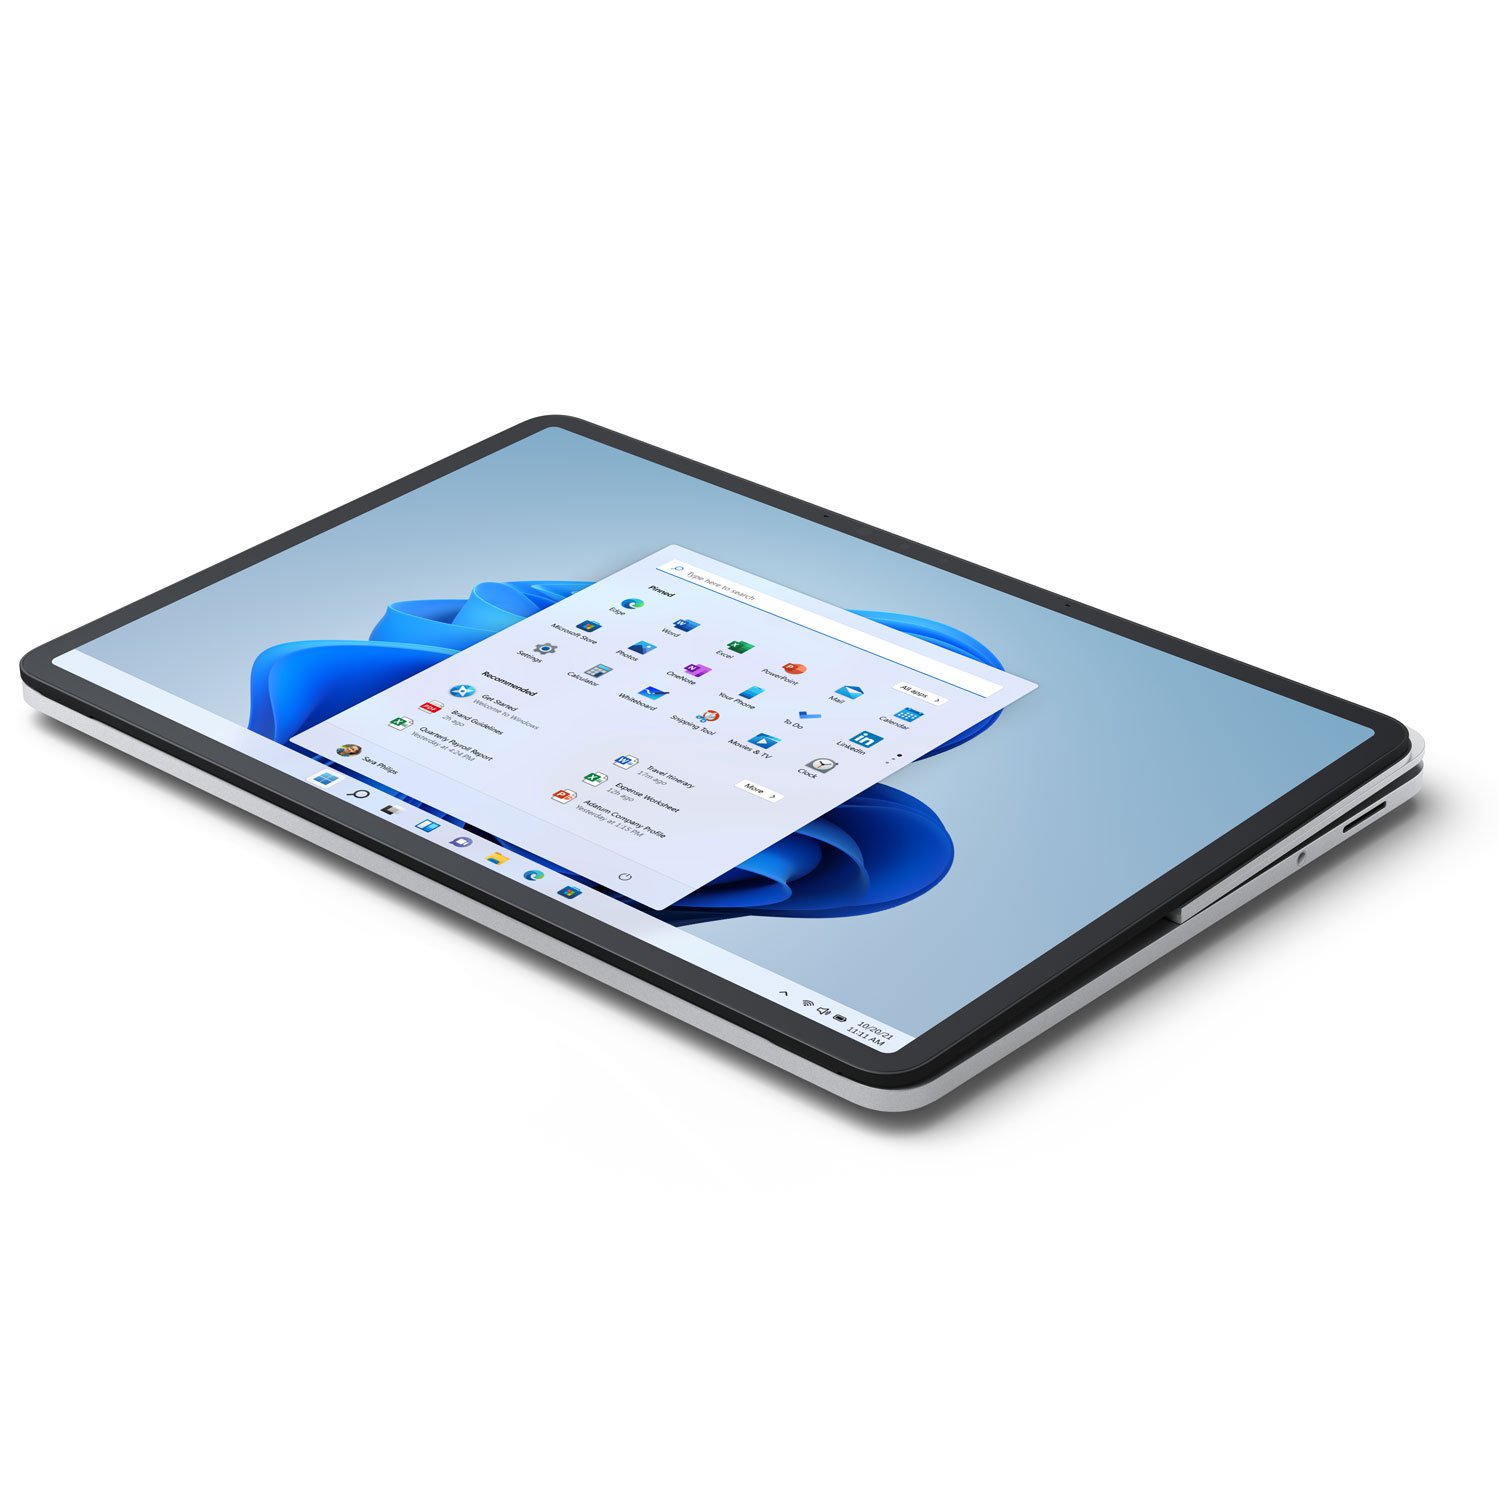 سرفیس لپ تاپ استودیو مایکروسافت 14 اینچ Core i5-16GB-512GB